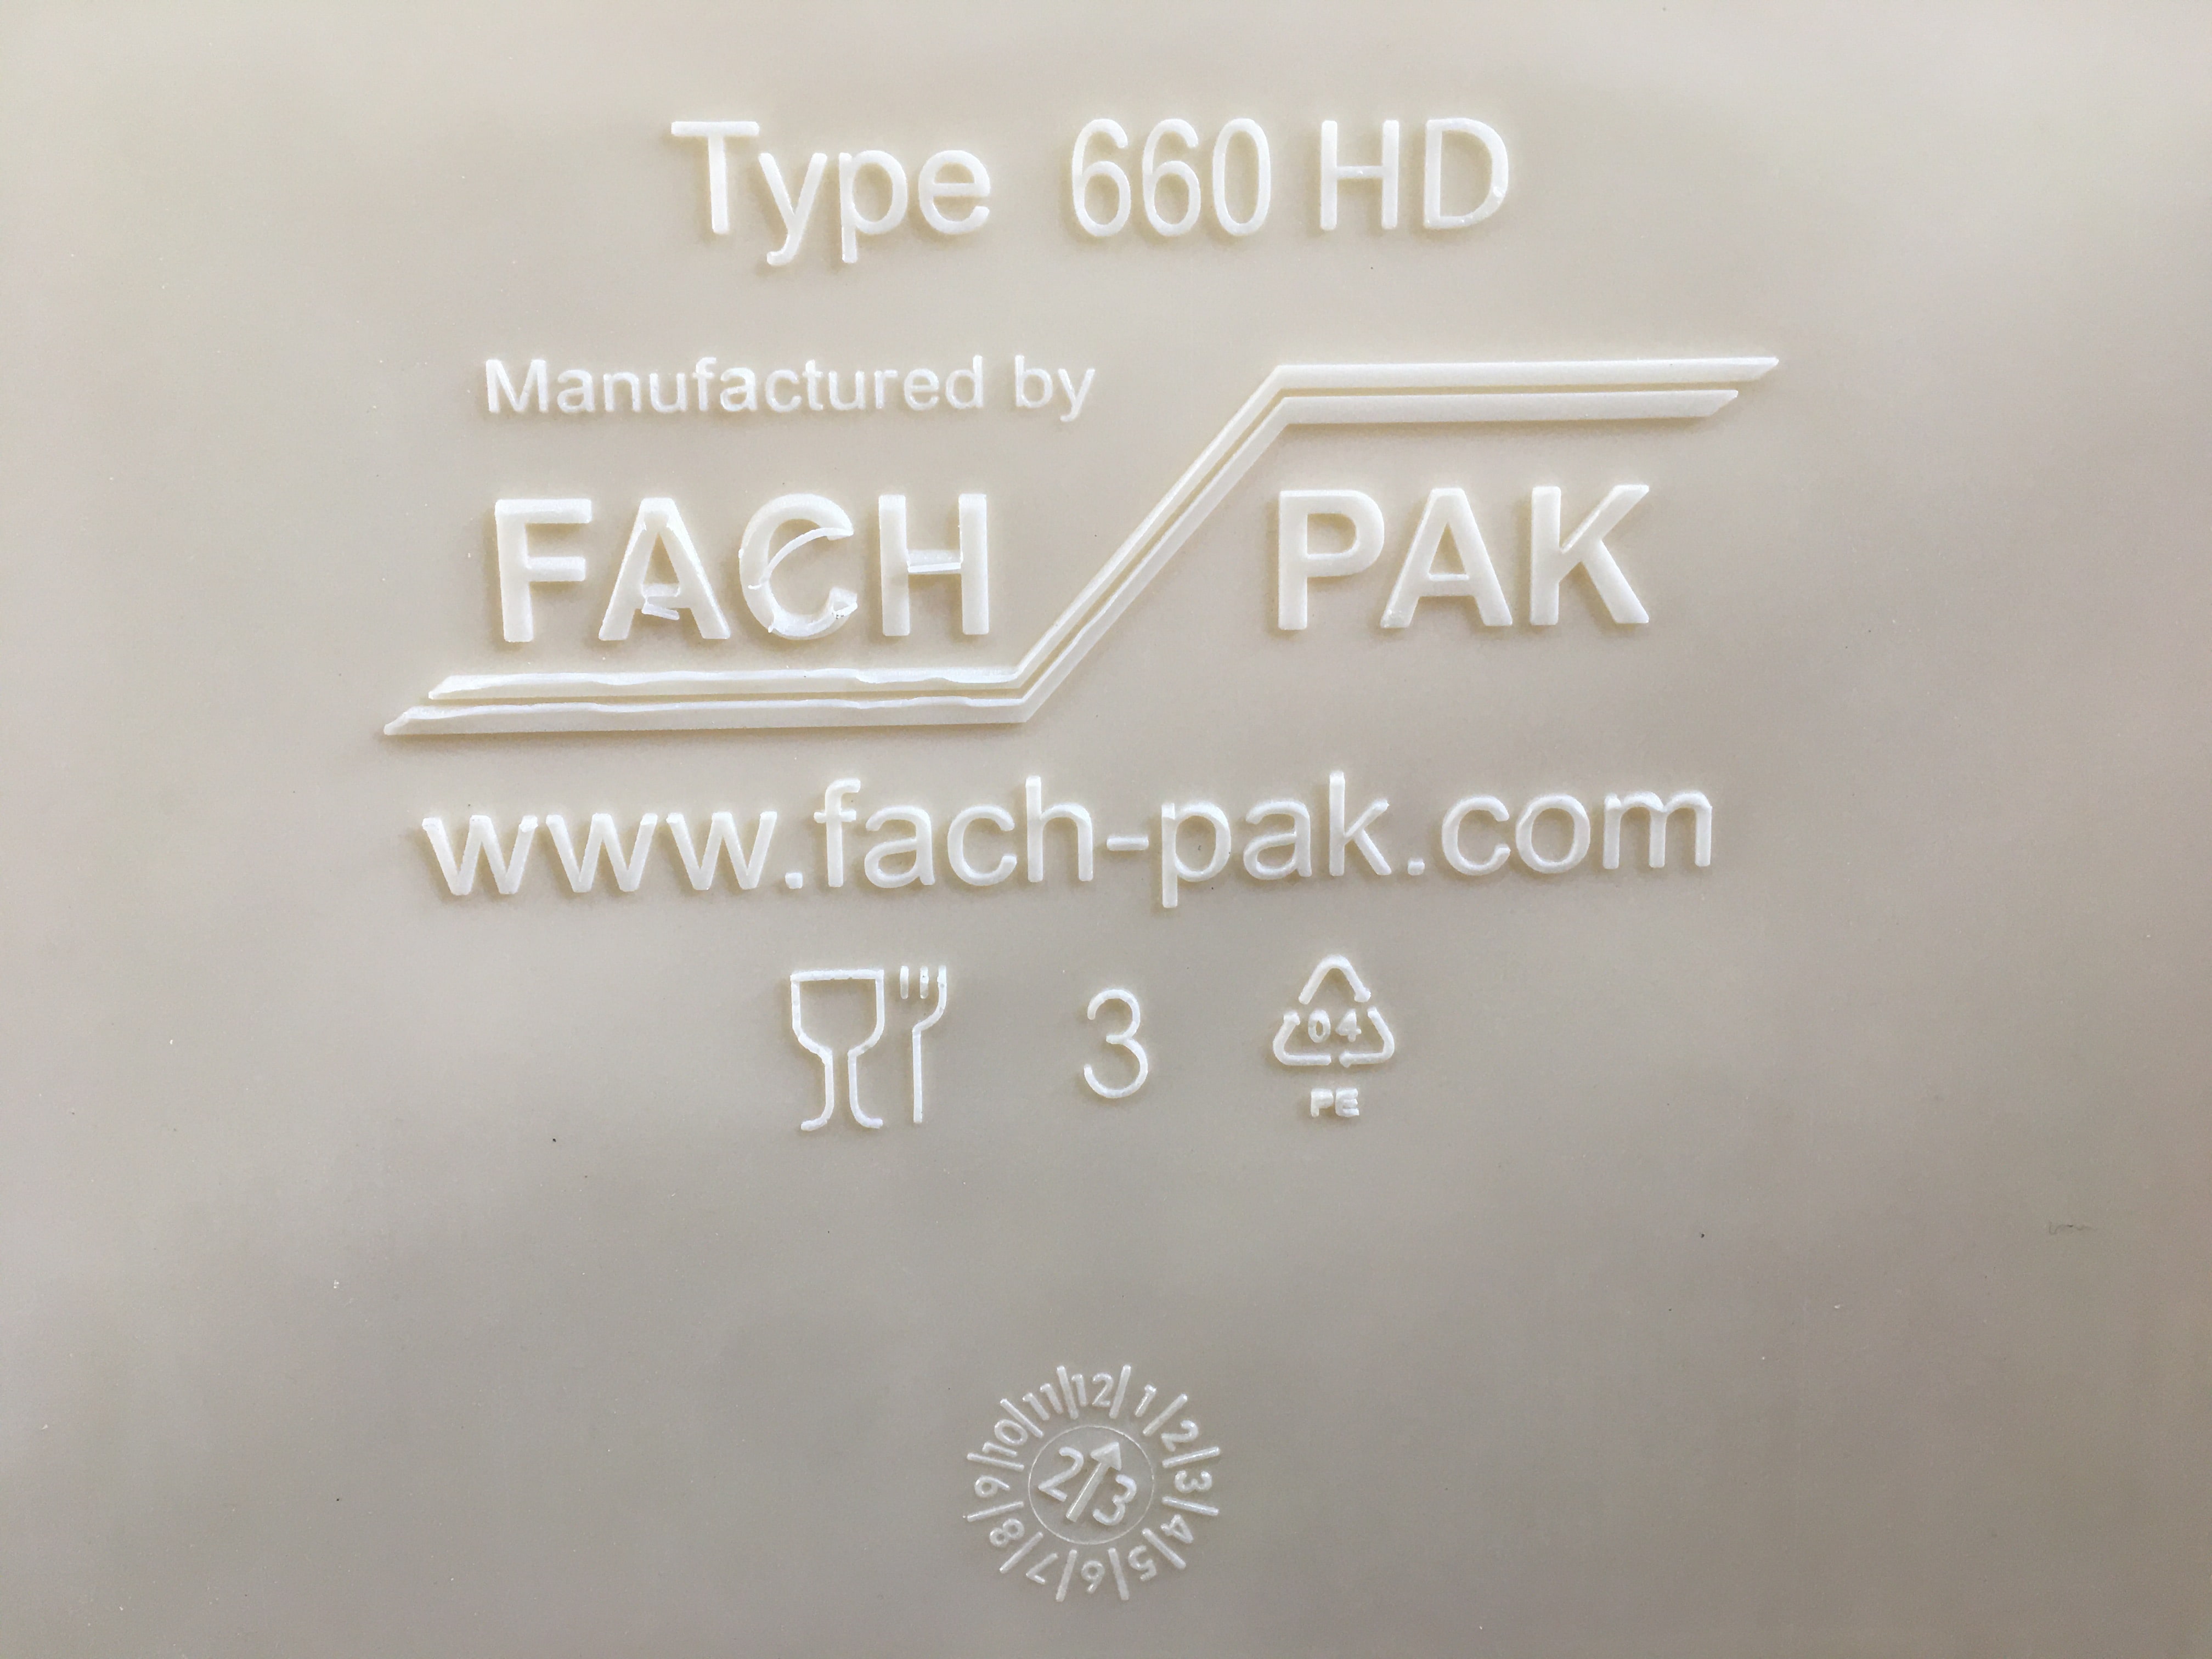 Logo Firmy wraz z adresem www.fach-pak.com wytłoczone na pojemniku